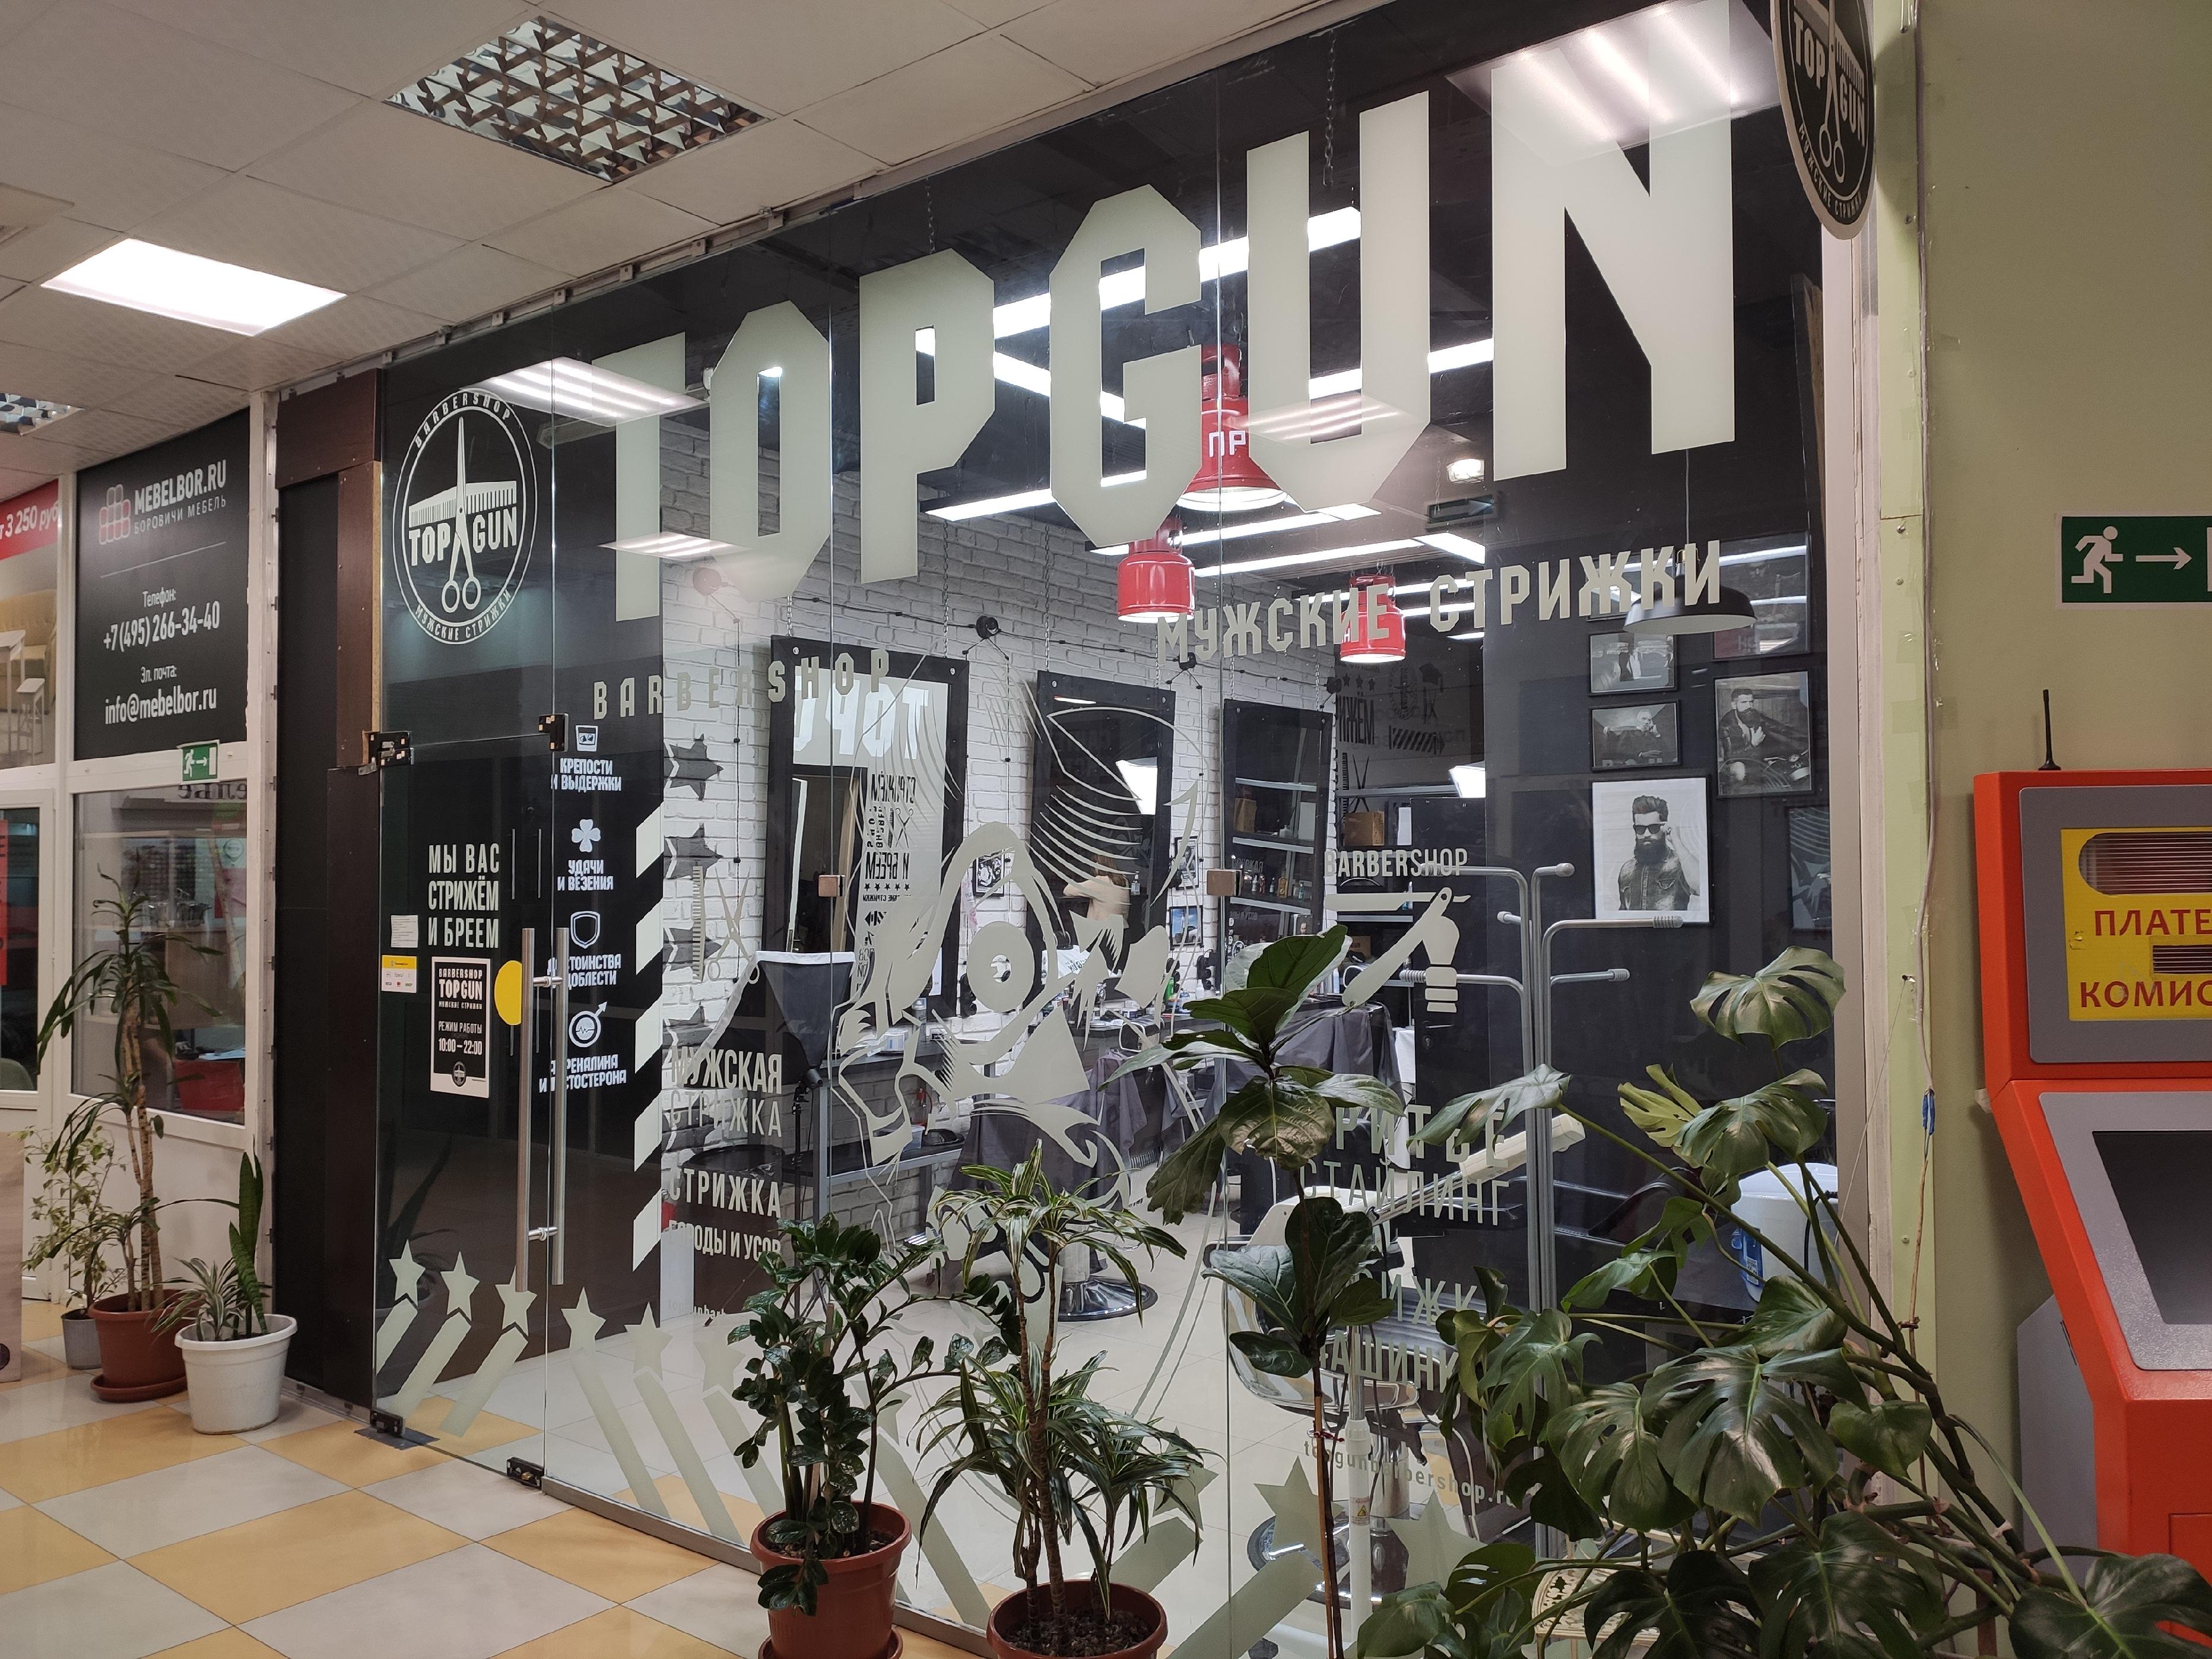 TOPGUN, сеть барбершопов, Мячковский бульвар, 13 (1 этаж)